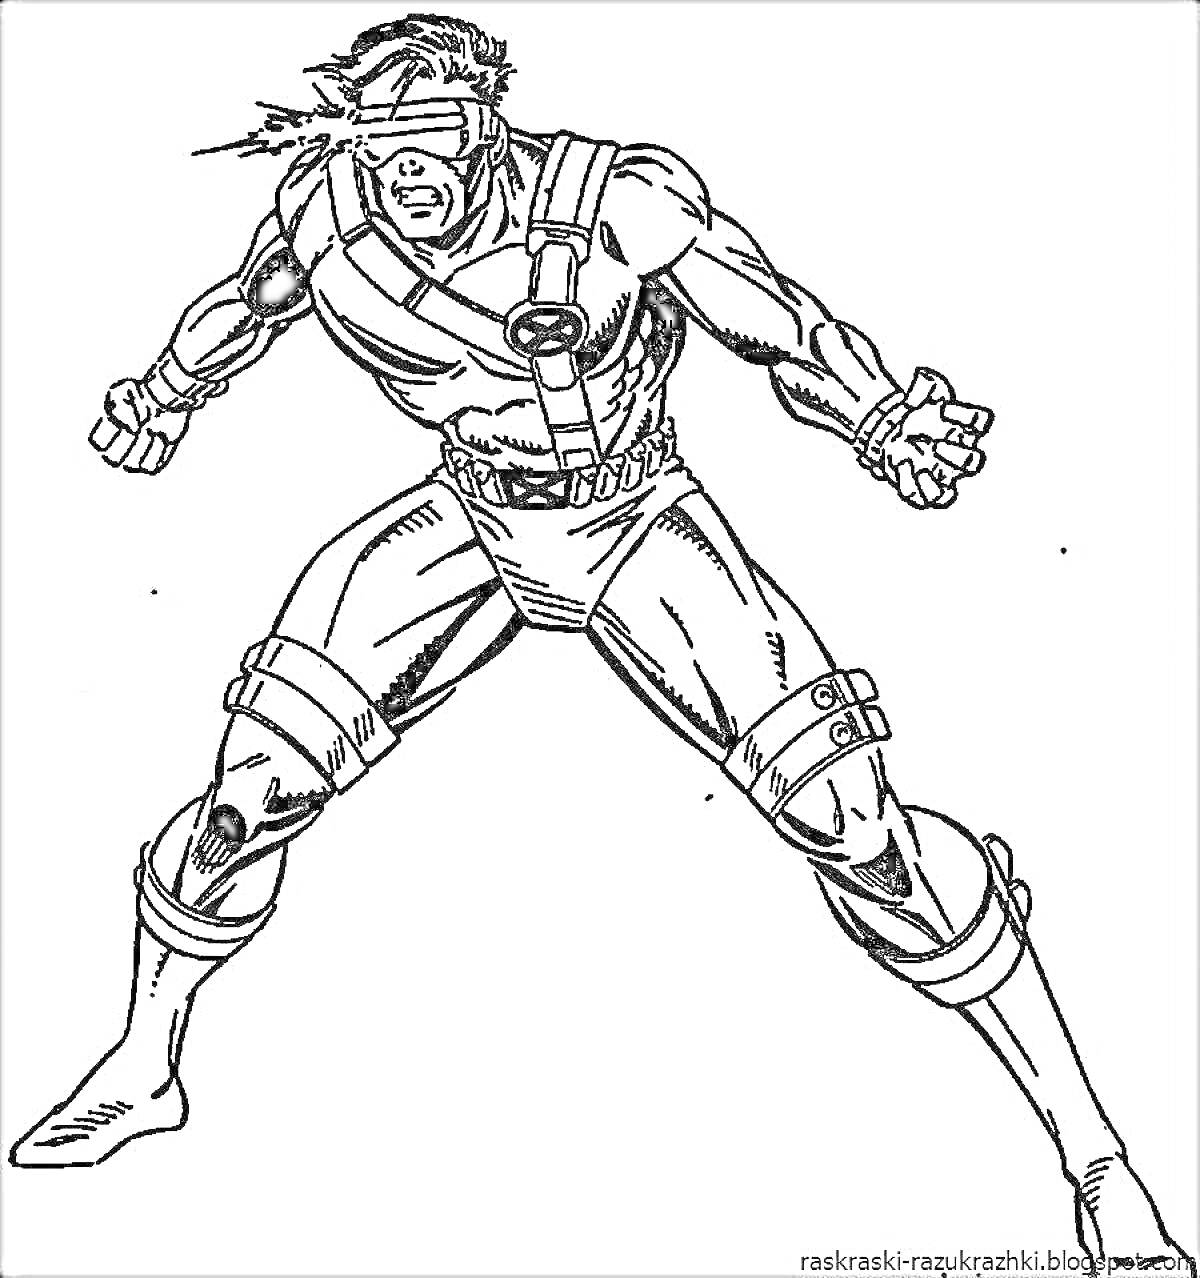 Раскраска Супергерой с повязкой на глазах и в костюме с ремнями, стоящий в боевой позе